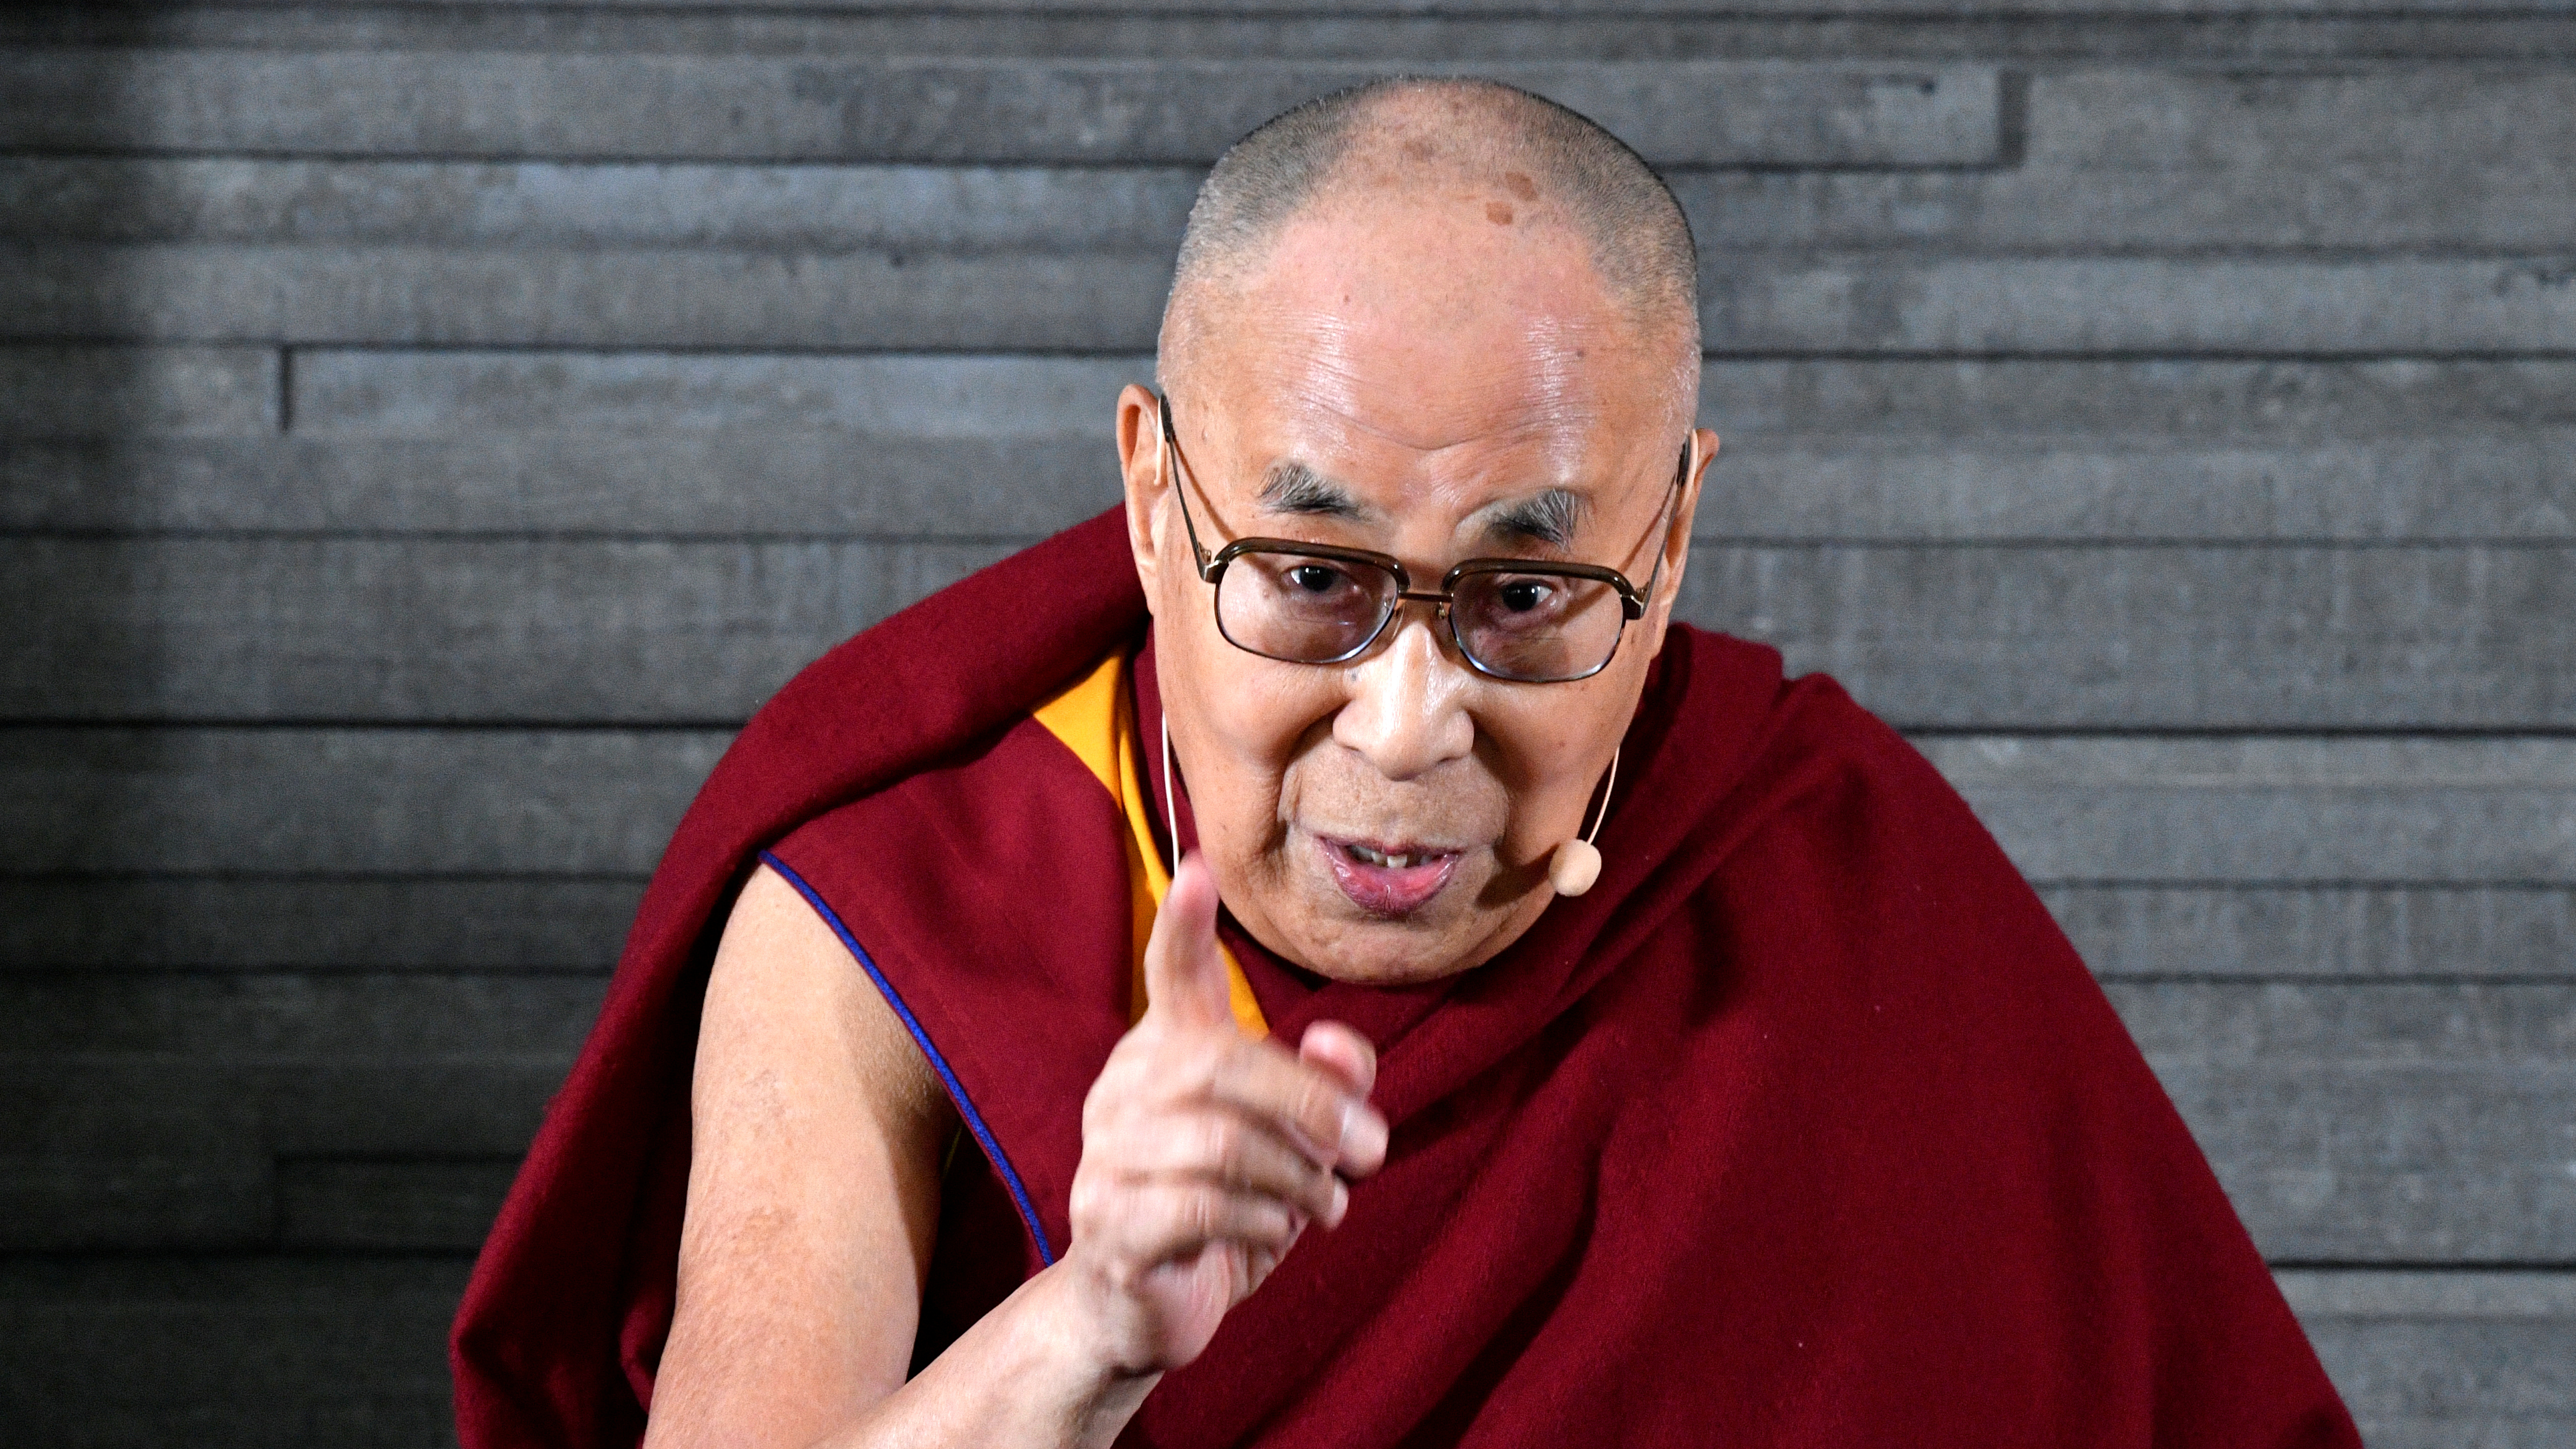 Tibetan spiritual leader Dalai Lama visits Sweden